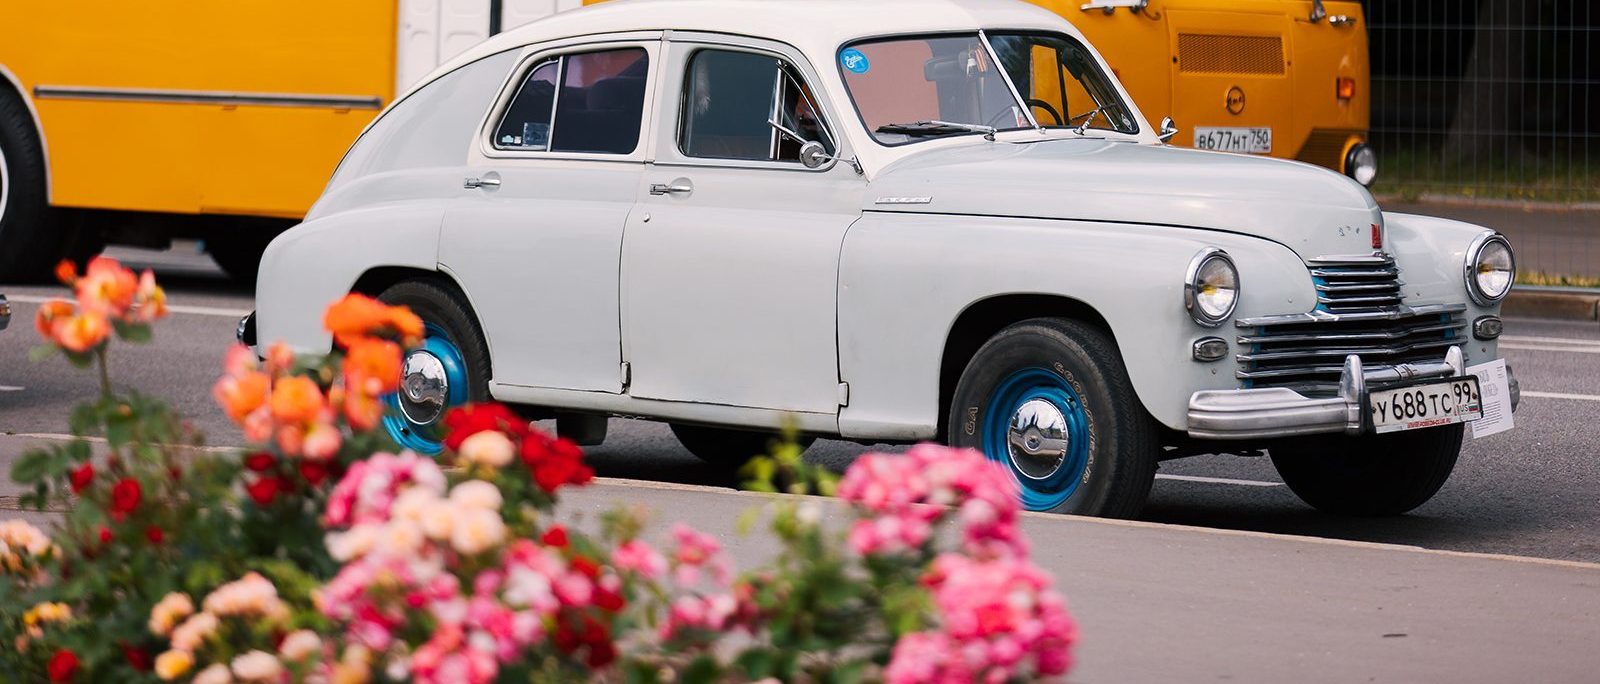 Жители и гости столицы смогут сестьза руль старинных машин и отправиться на экскурсию по фондохранилищу. Фот:о: сайт мэра Москвы